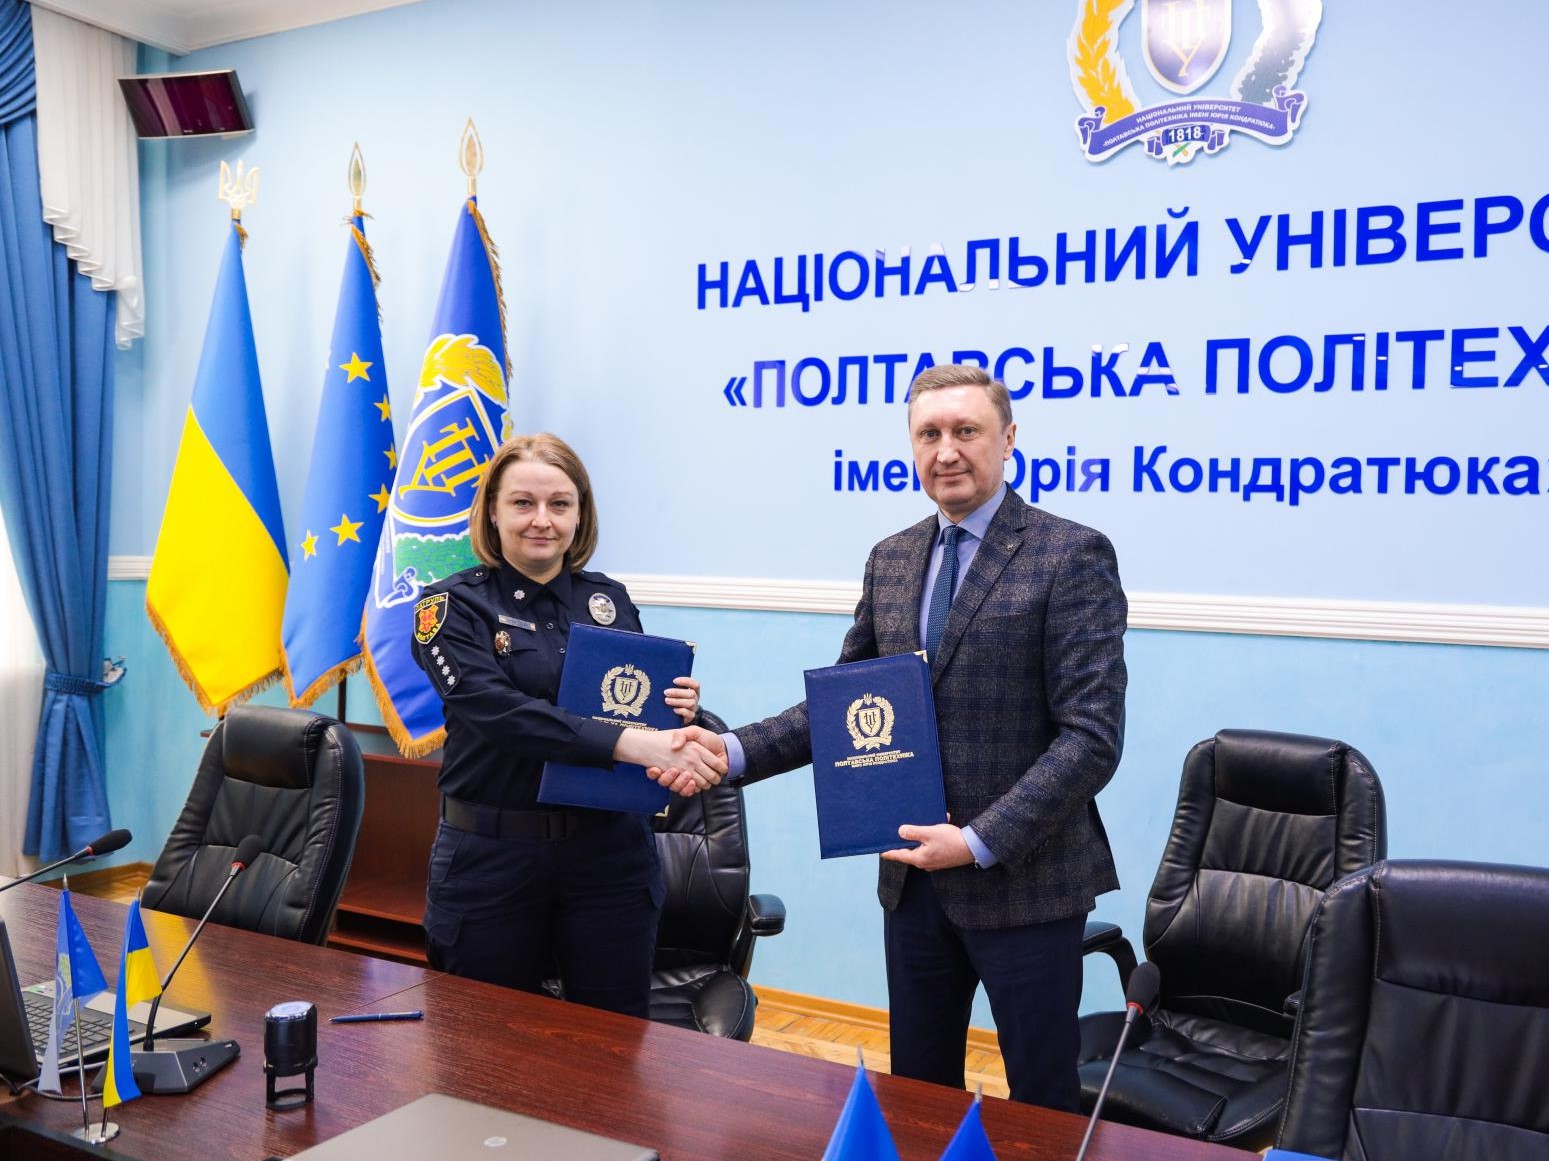 Політехніка підписала Меморандум про співпрацю з Українською асоціацією представниць правоохоронних органів